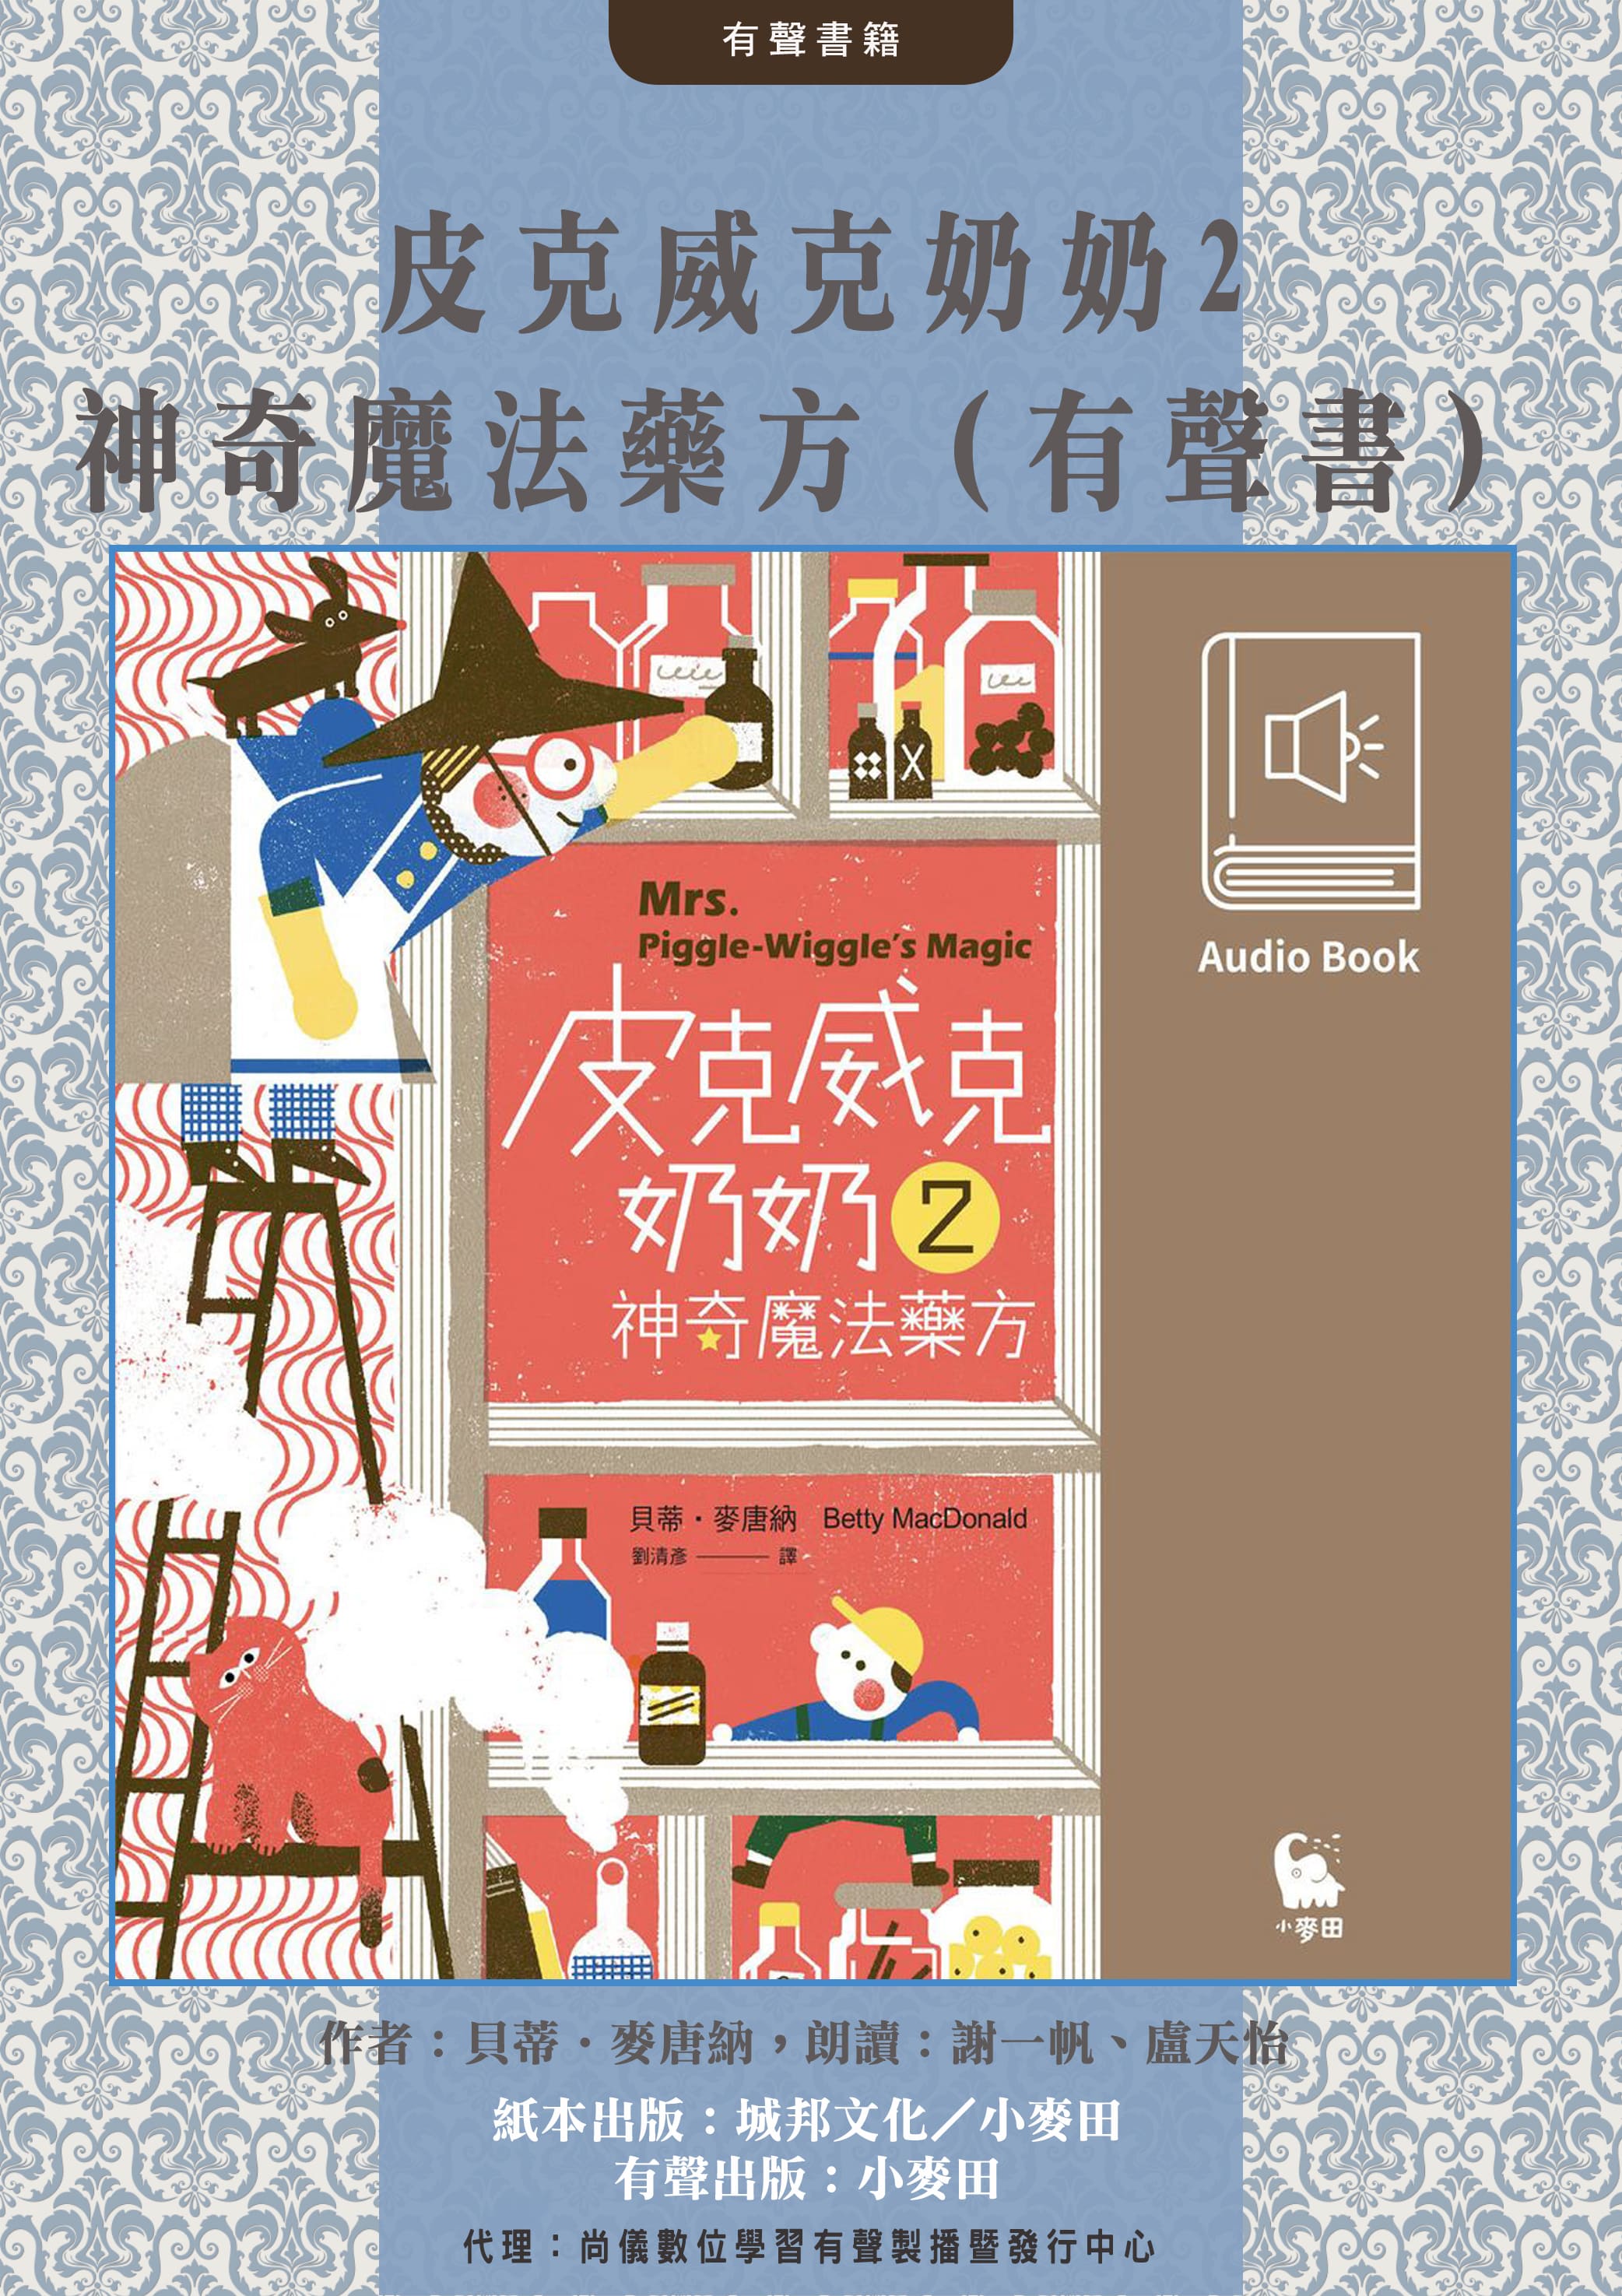 皮克威克奶奶2神奇魔法藥方（美國兒童文學經典‧中文版有聲書首度上市）封面圖